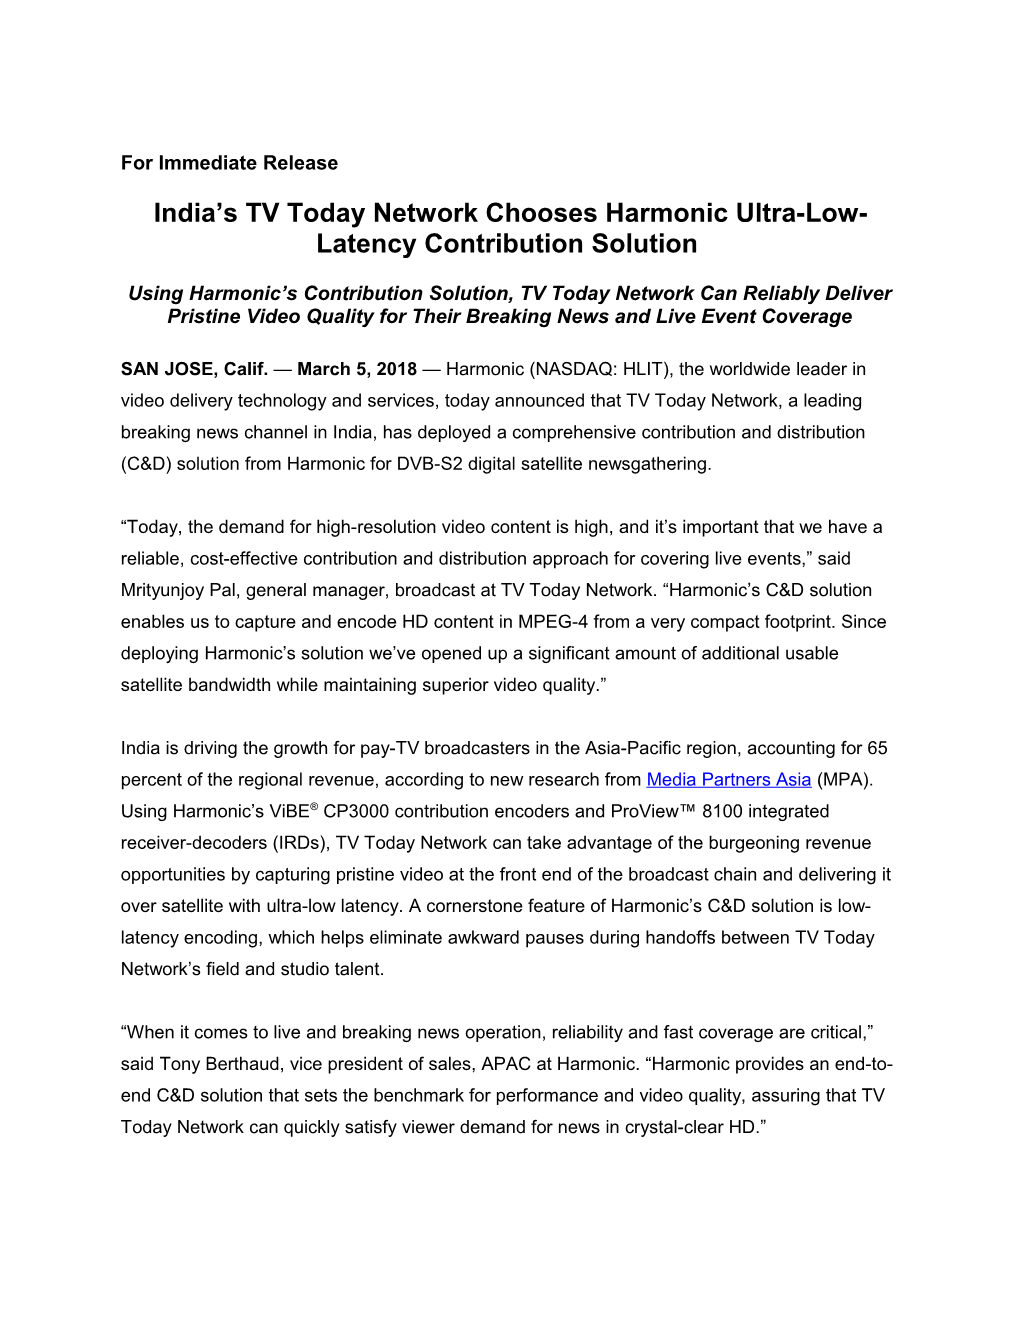 Harmonic Press Release